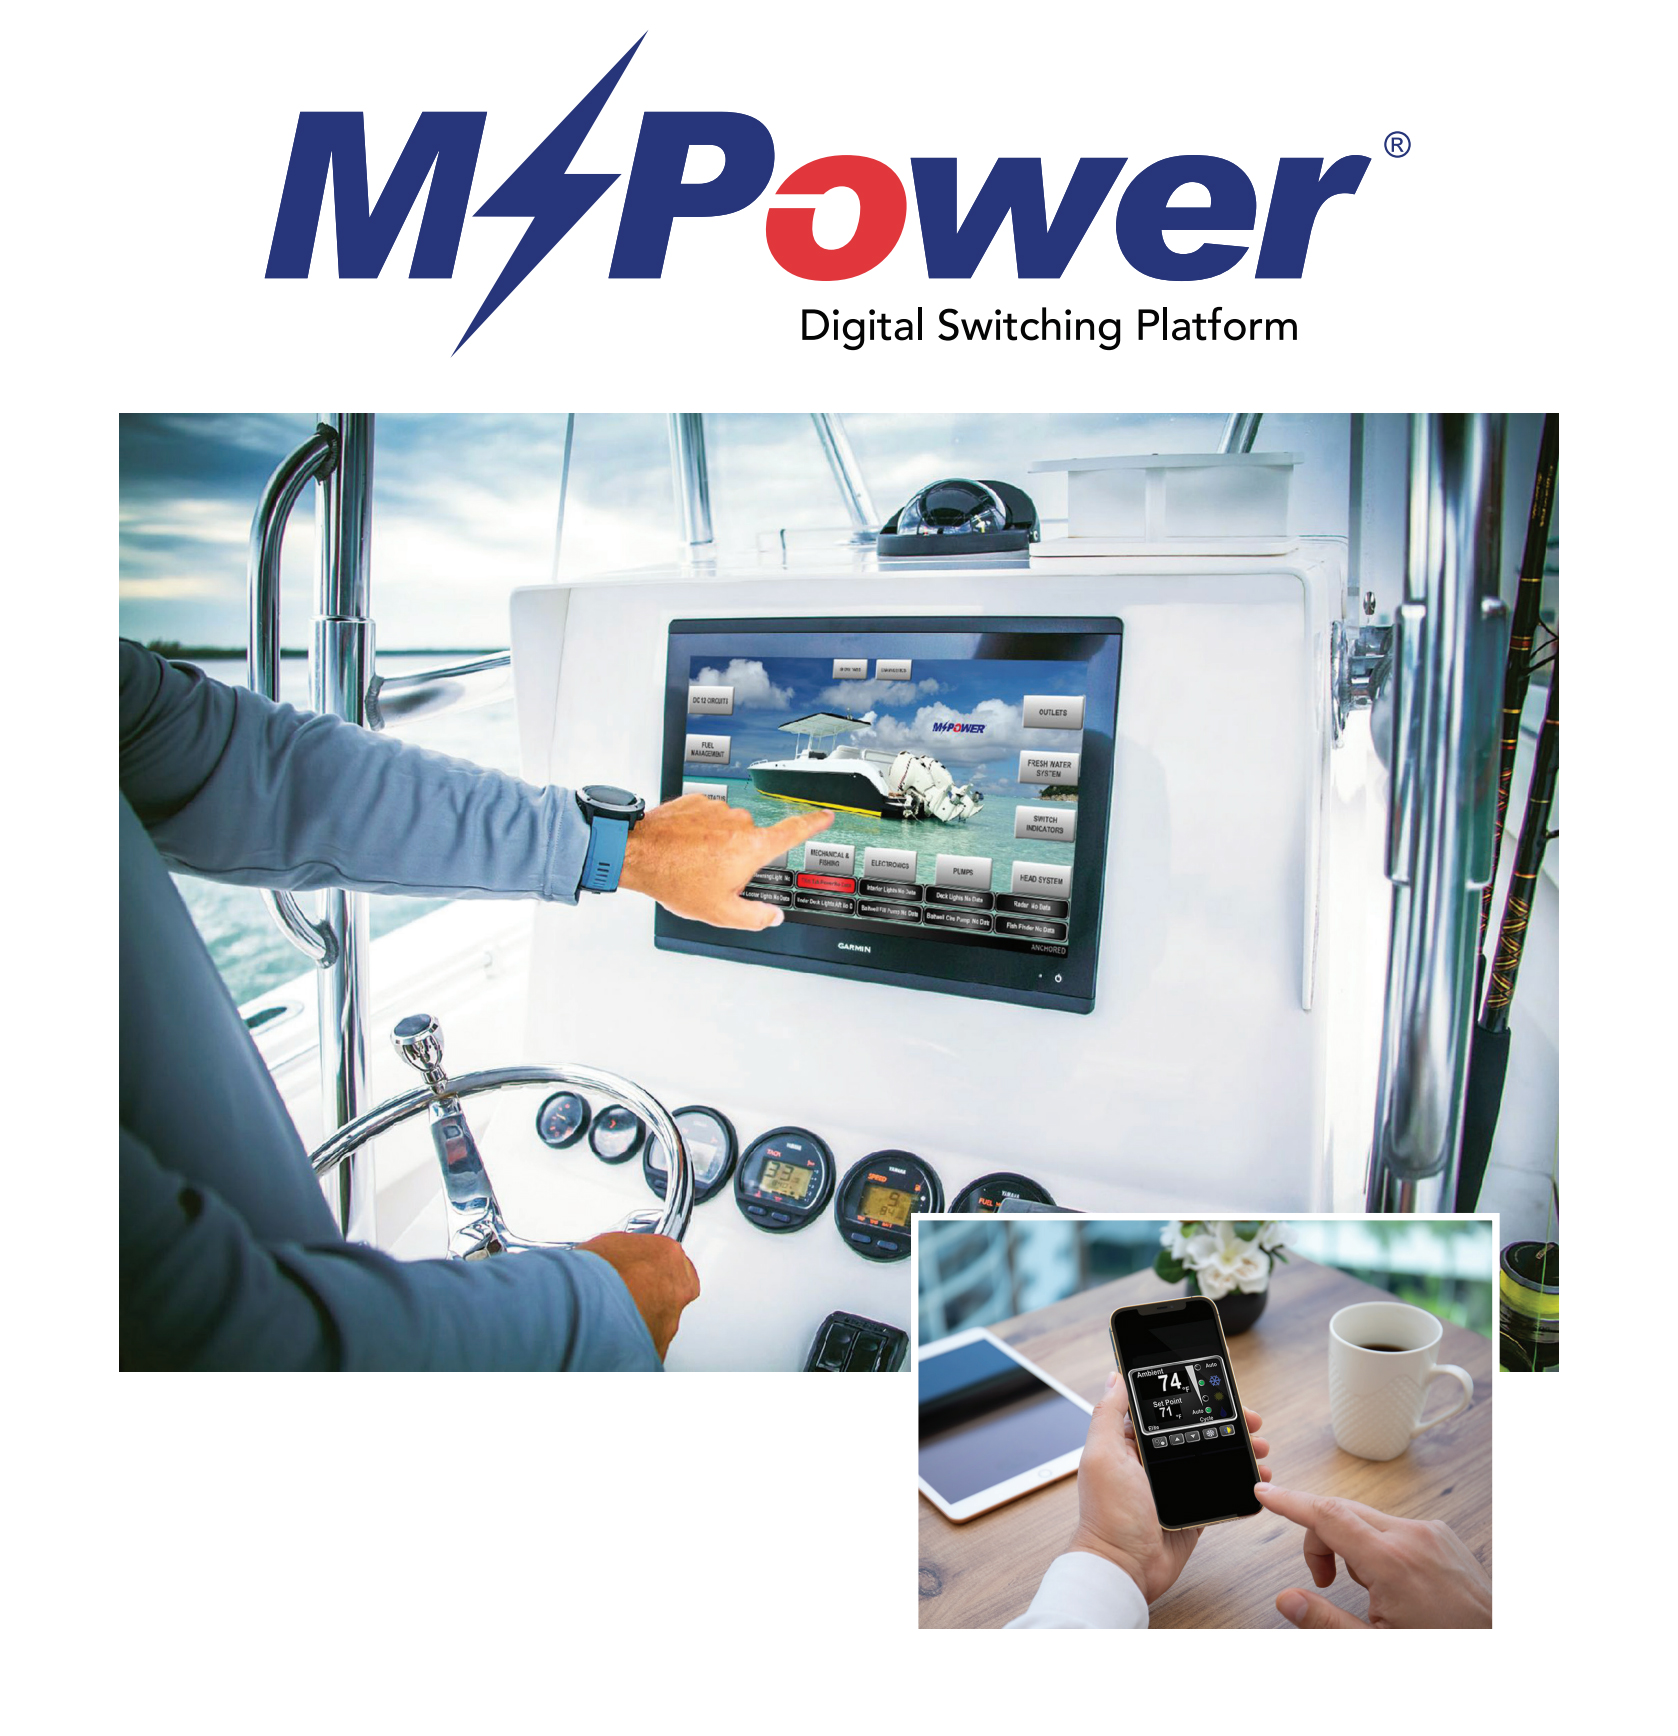 MPower Digital Switching Platform